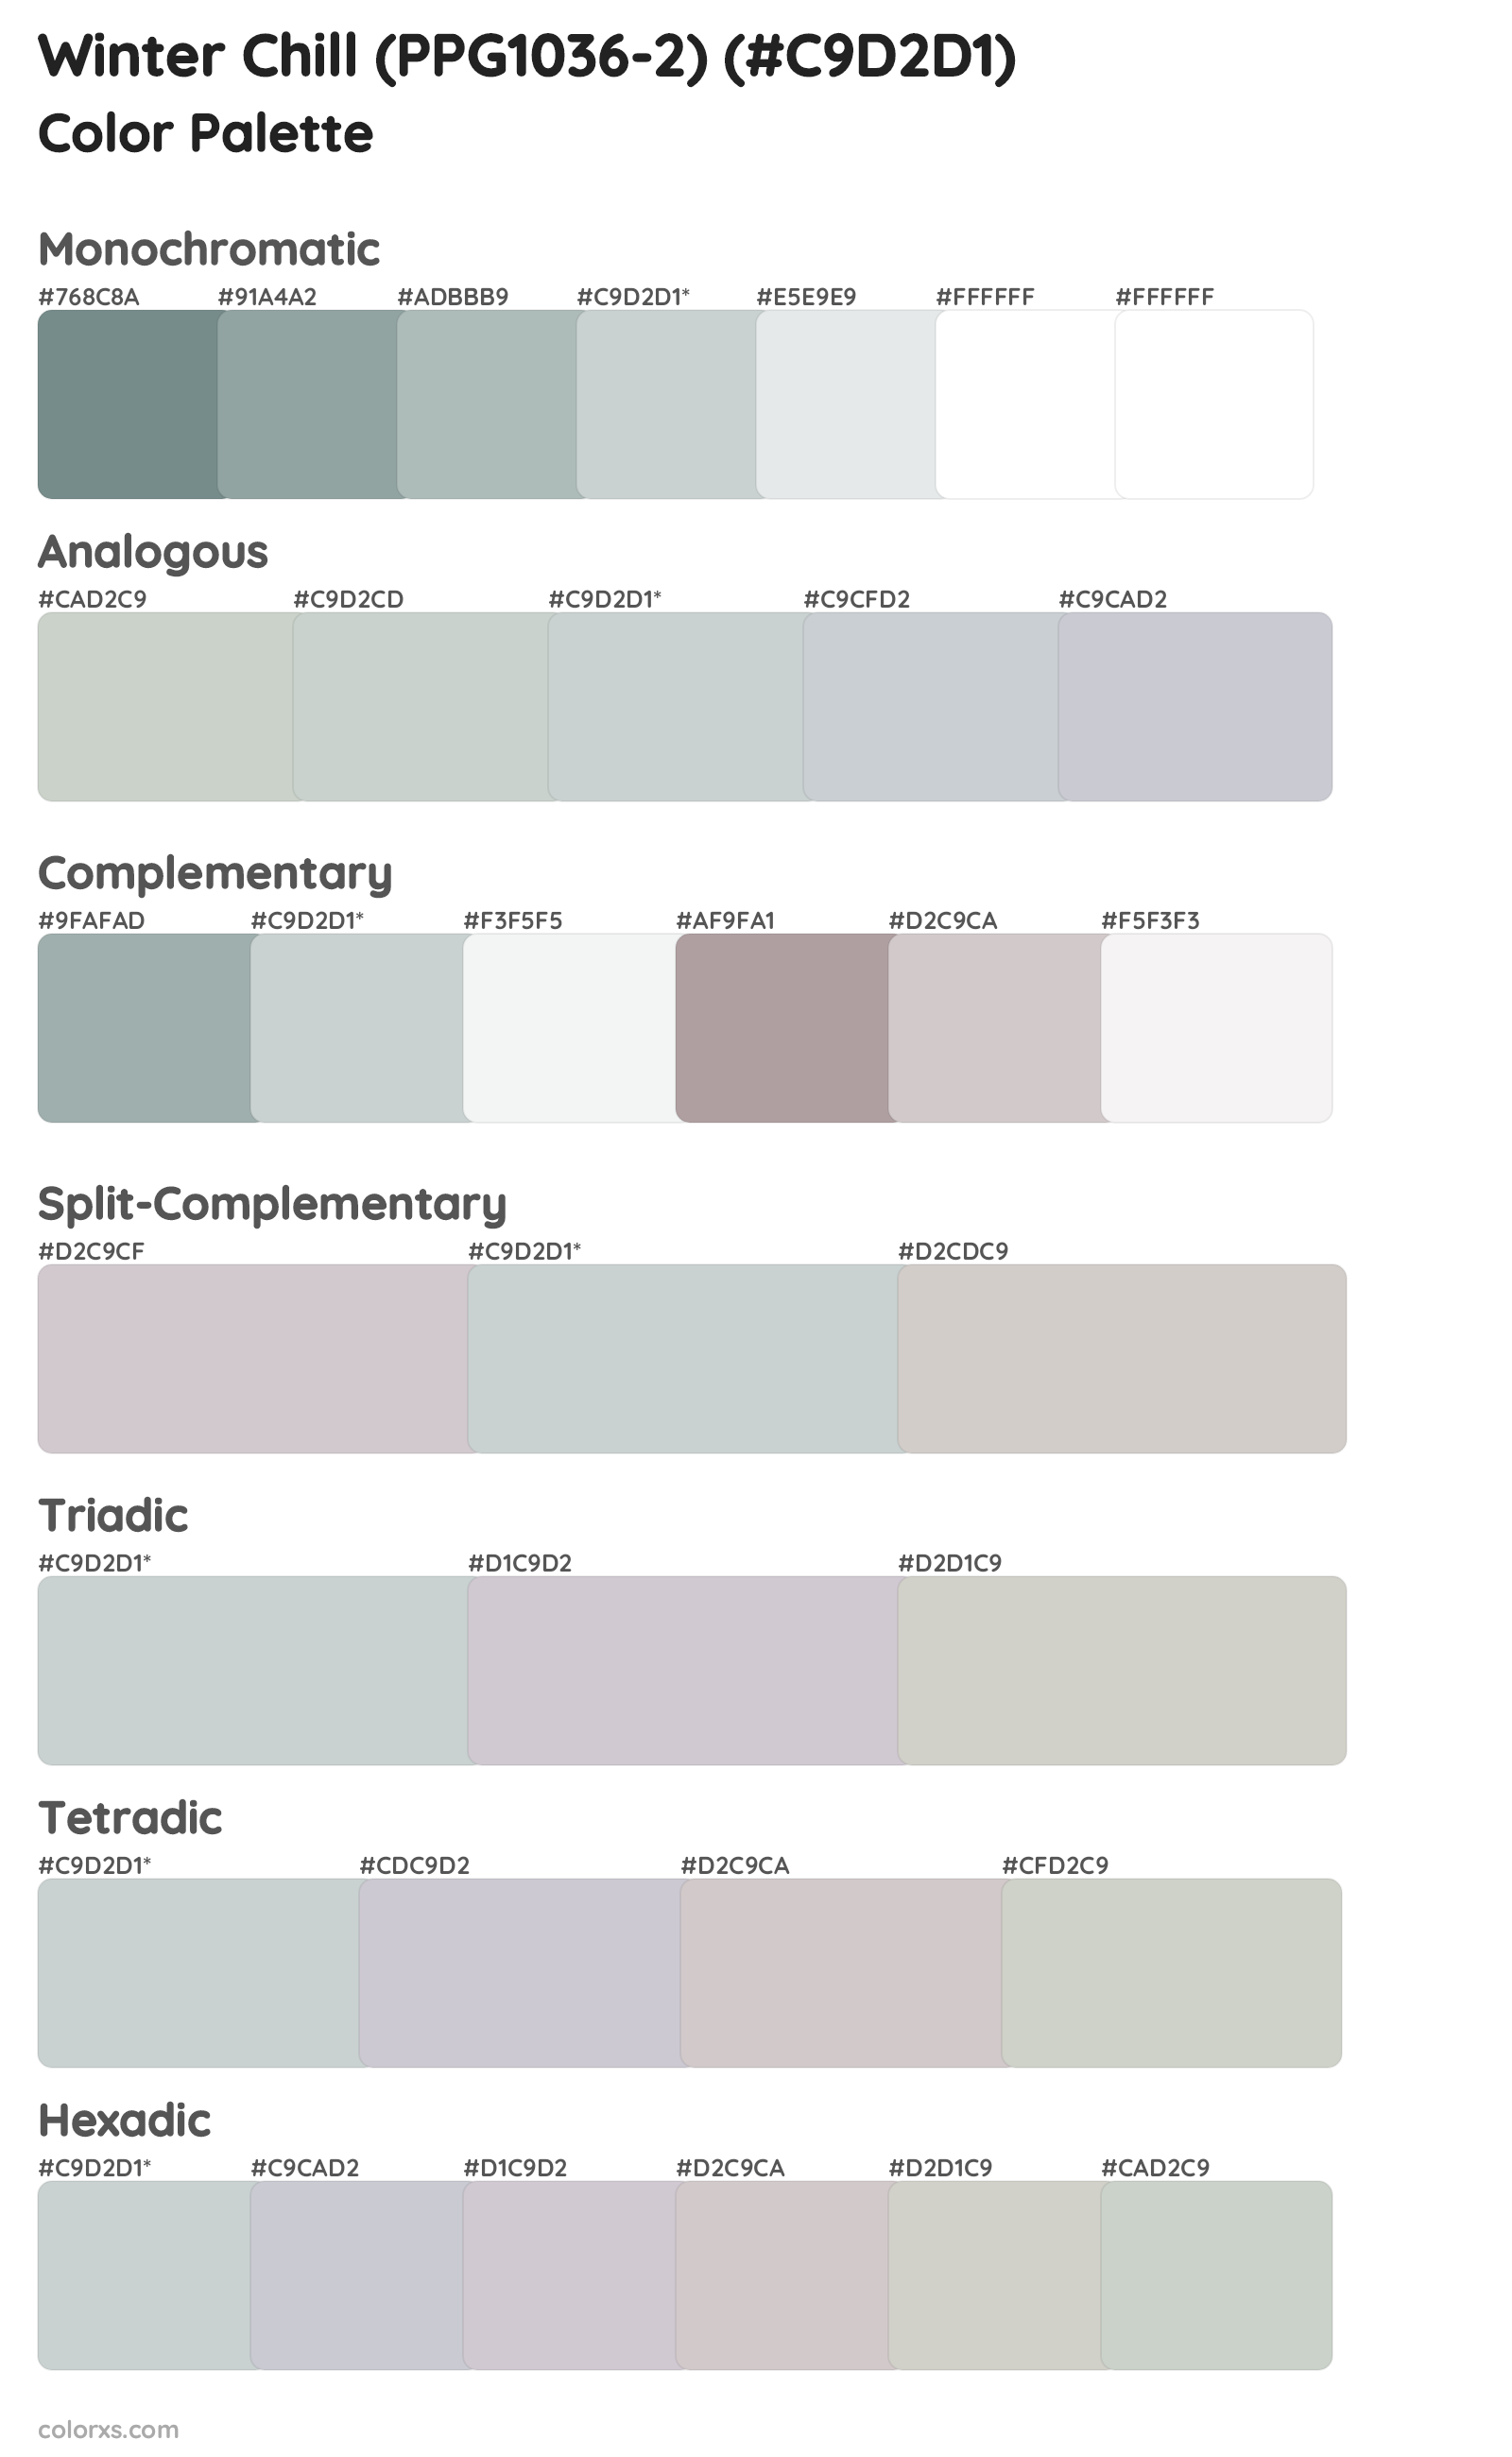 Winter Chill (PPG1036-2) Color Scheme Palettes